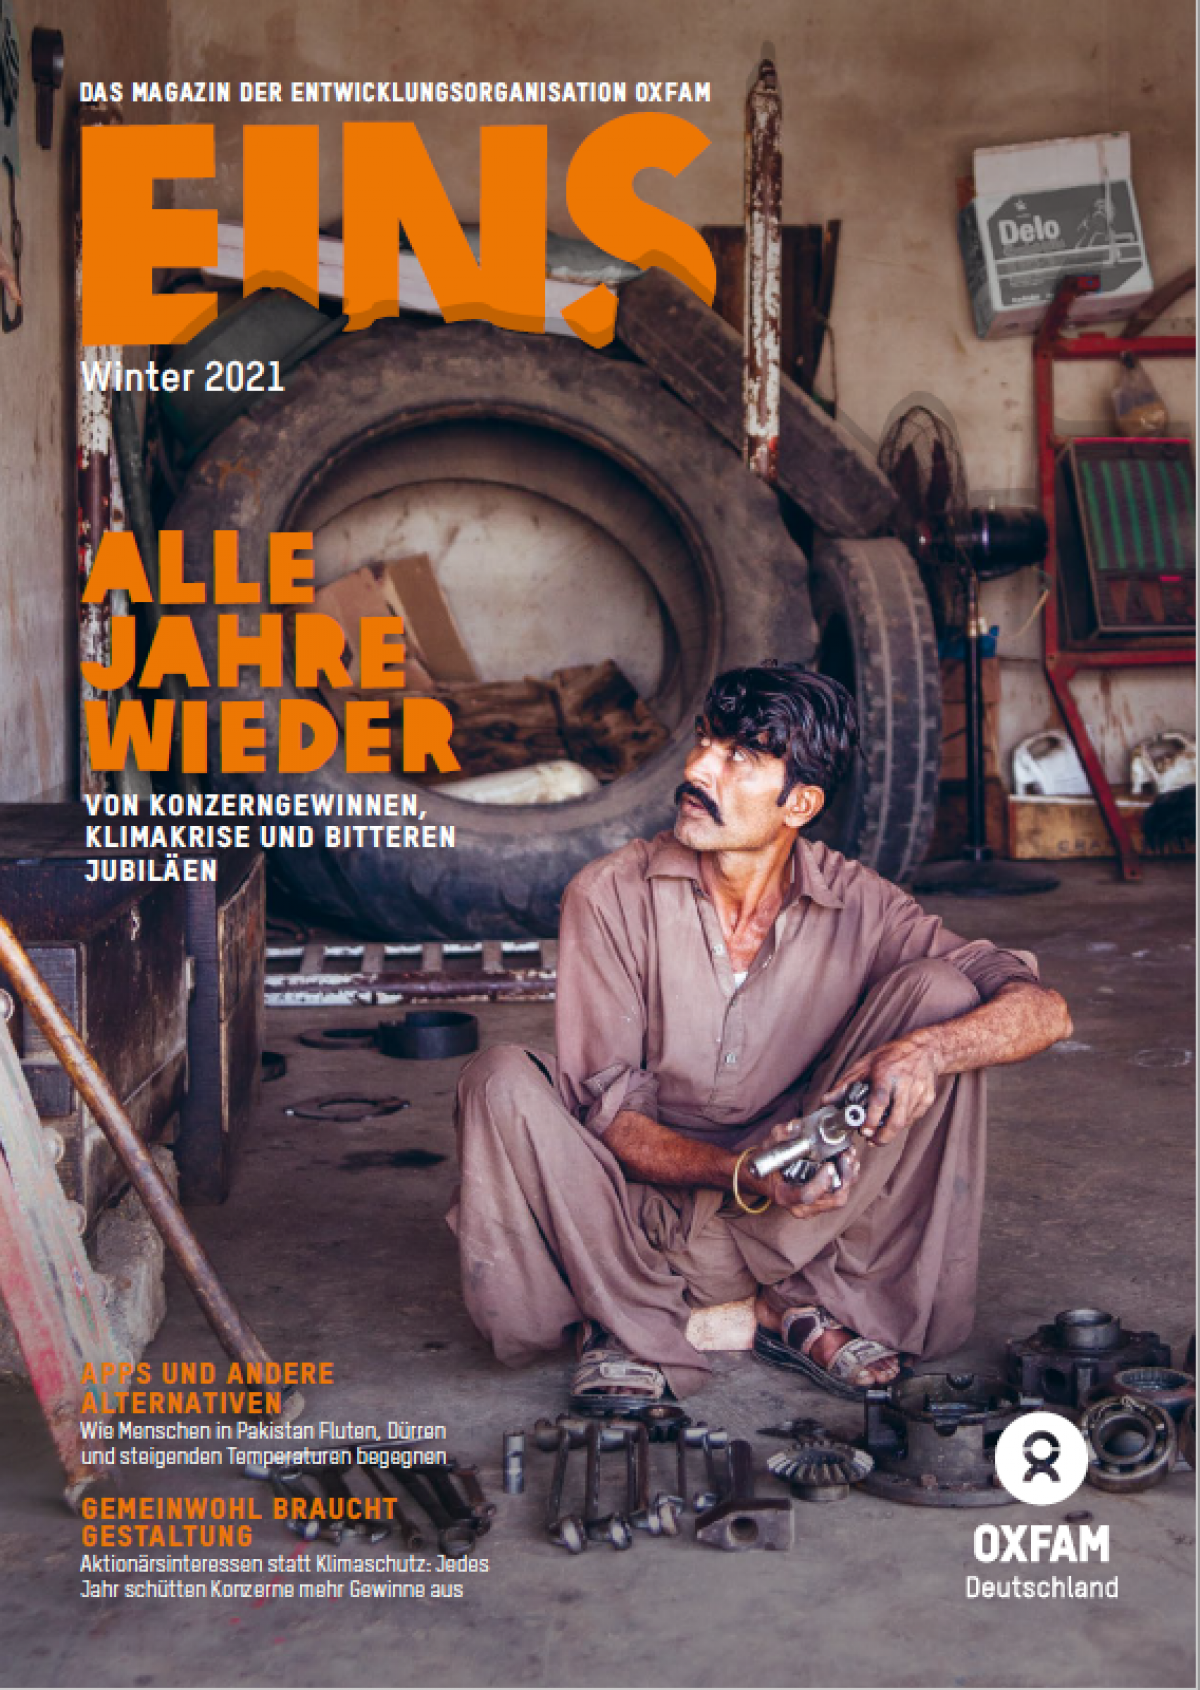 Coverbild der EINS: Ein Mann sitzt auf einem Steinboden in einer Werkstatt mit einem Werkzeug in den Händen. Vor ihm liegen weitere Werkzeuge.